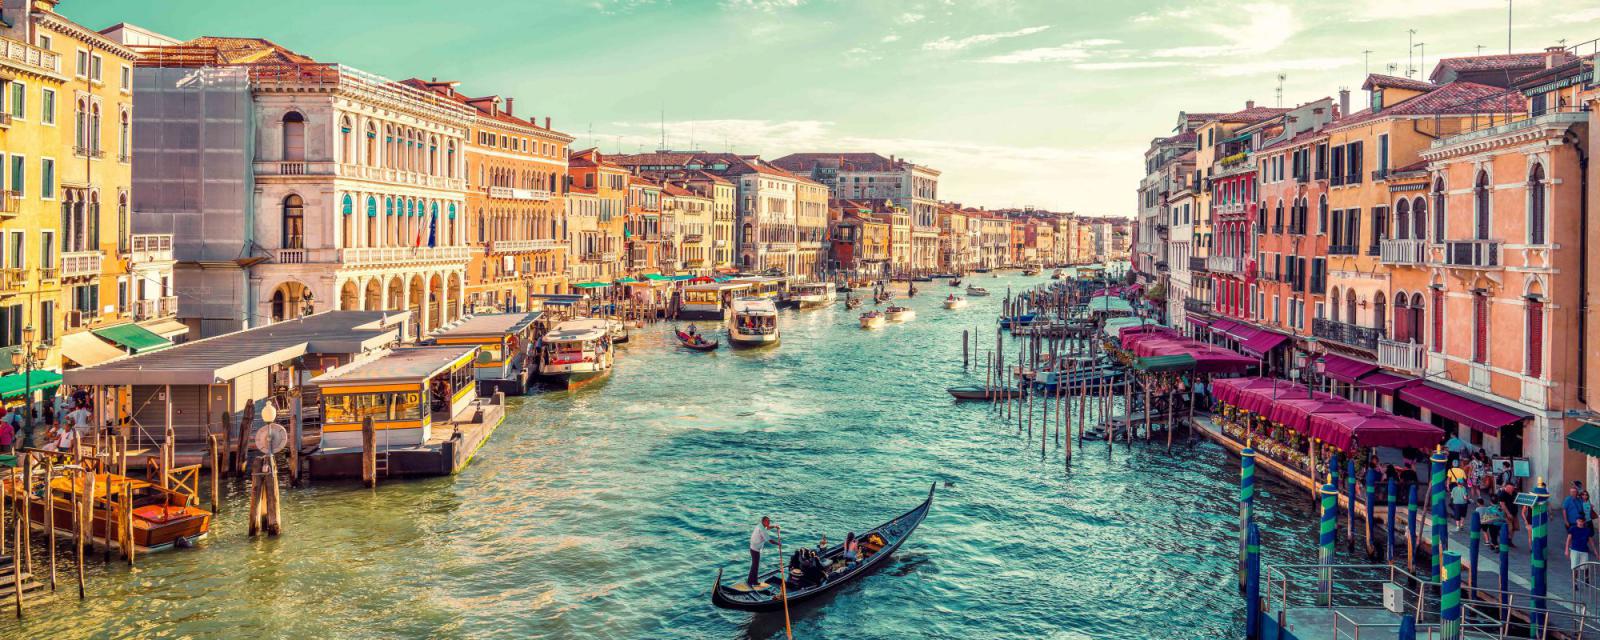 Tips en inspiratie voor een stedentrip naar Venetië 